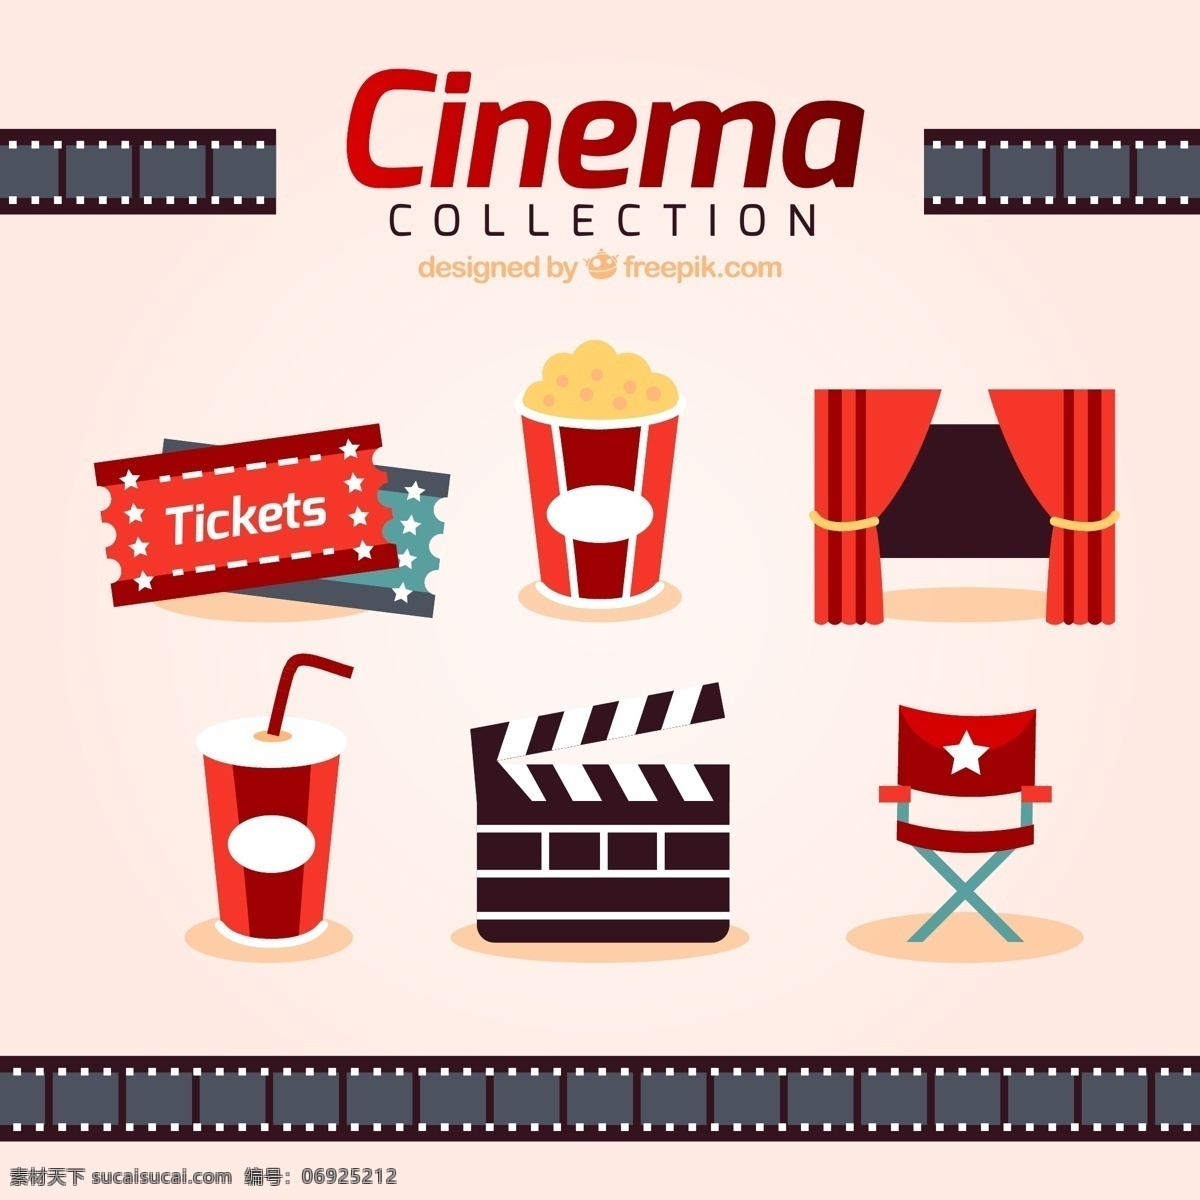 电影院图标 框架 影院 影片 红色 平面 电影 饮料 窗帘 椅子 娱乐 爆米花 显示 屏幕 剧院 座椅